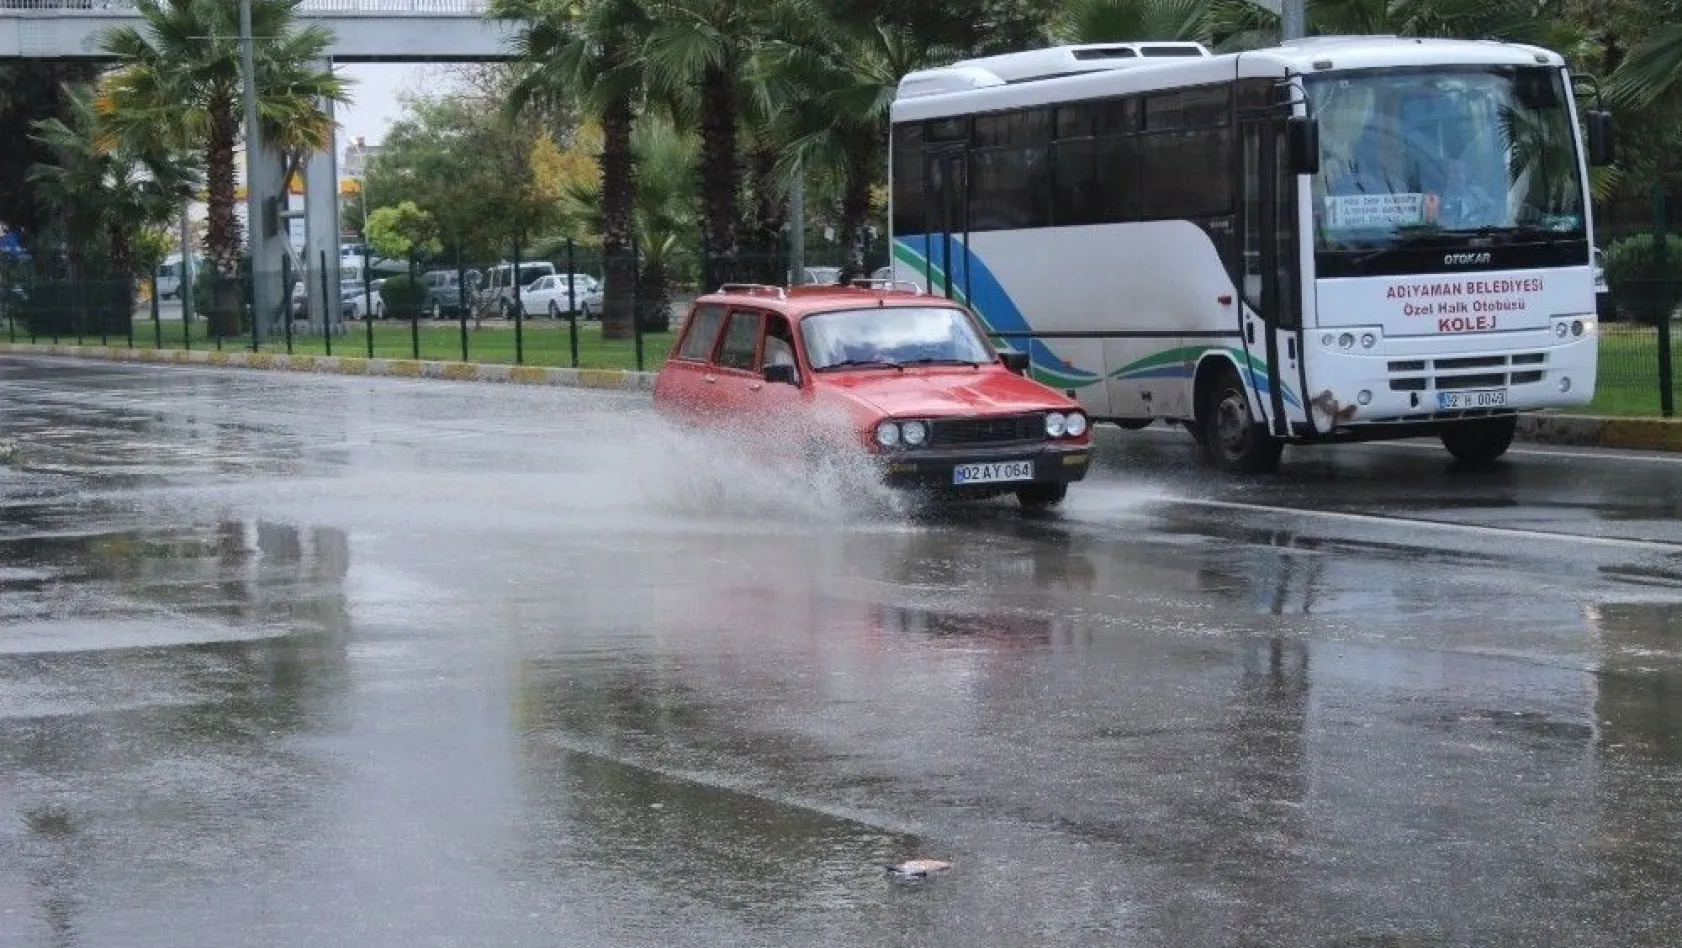 Yağmur vatandaşları hazırlıksız yakaladı
